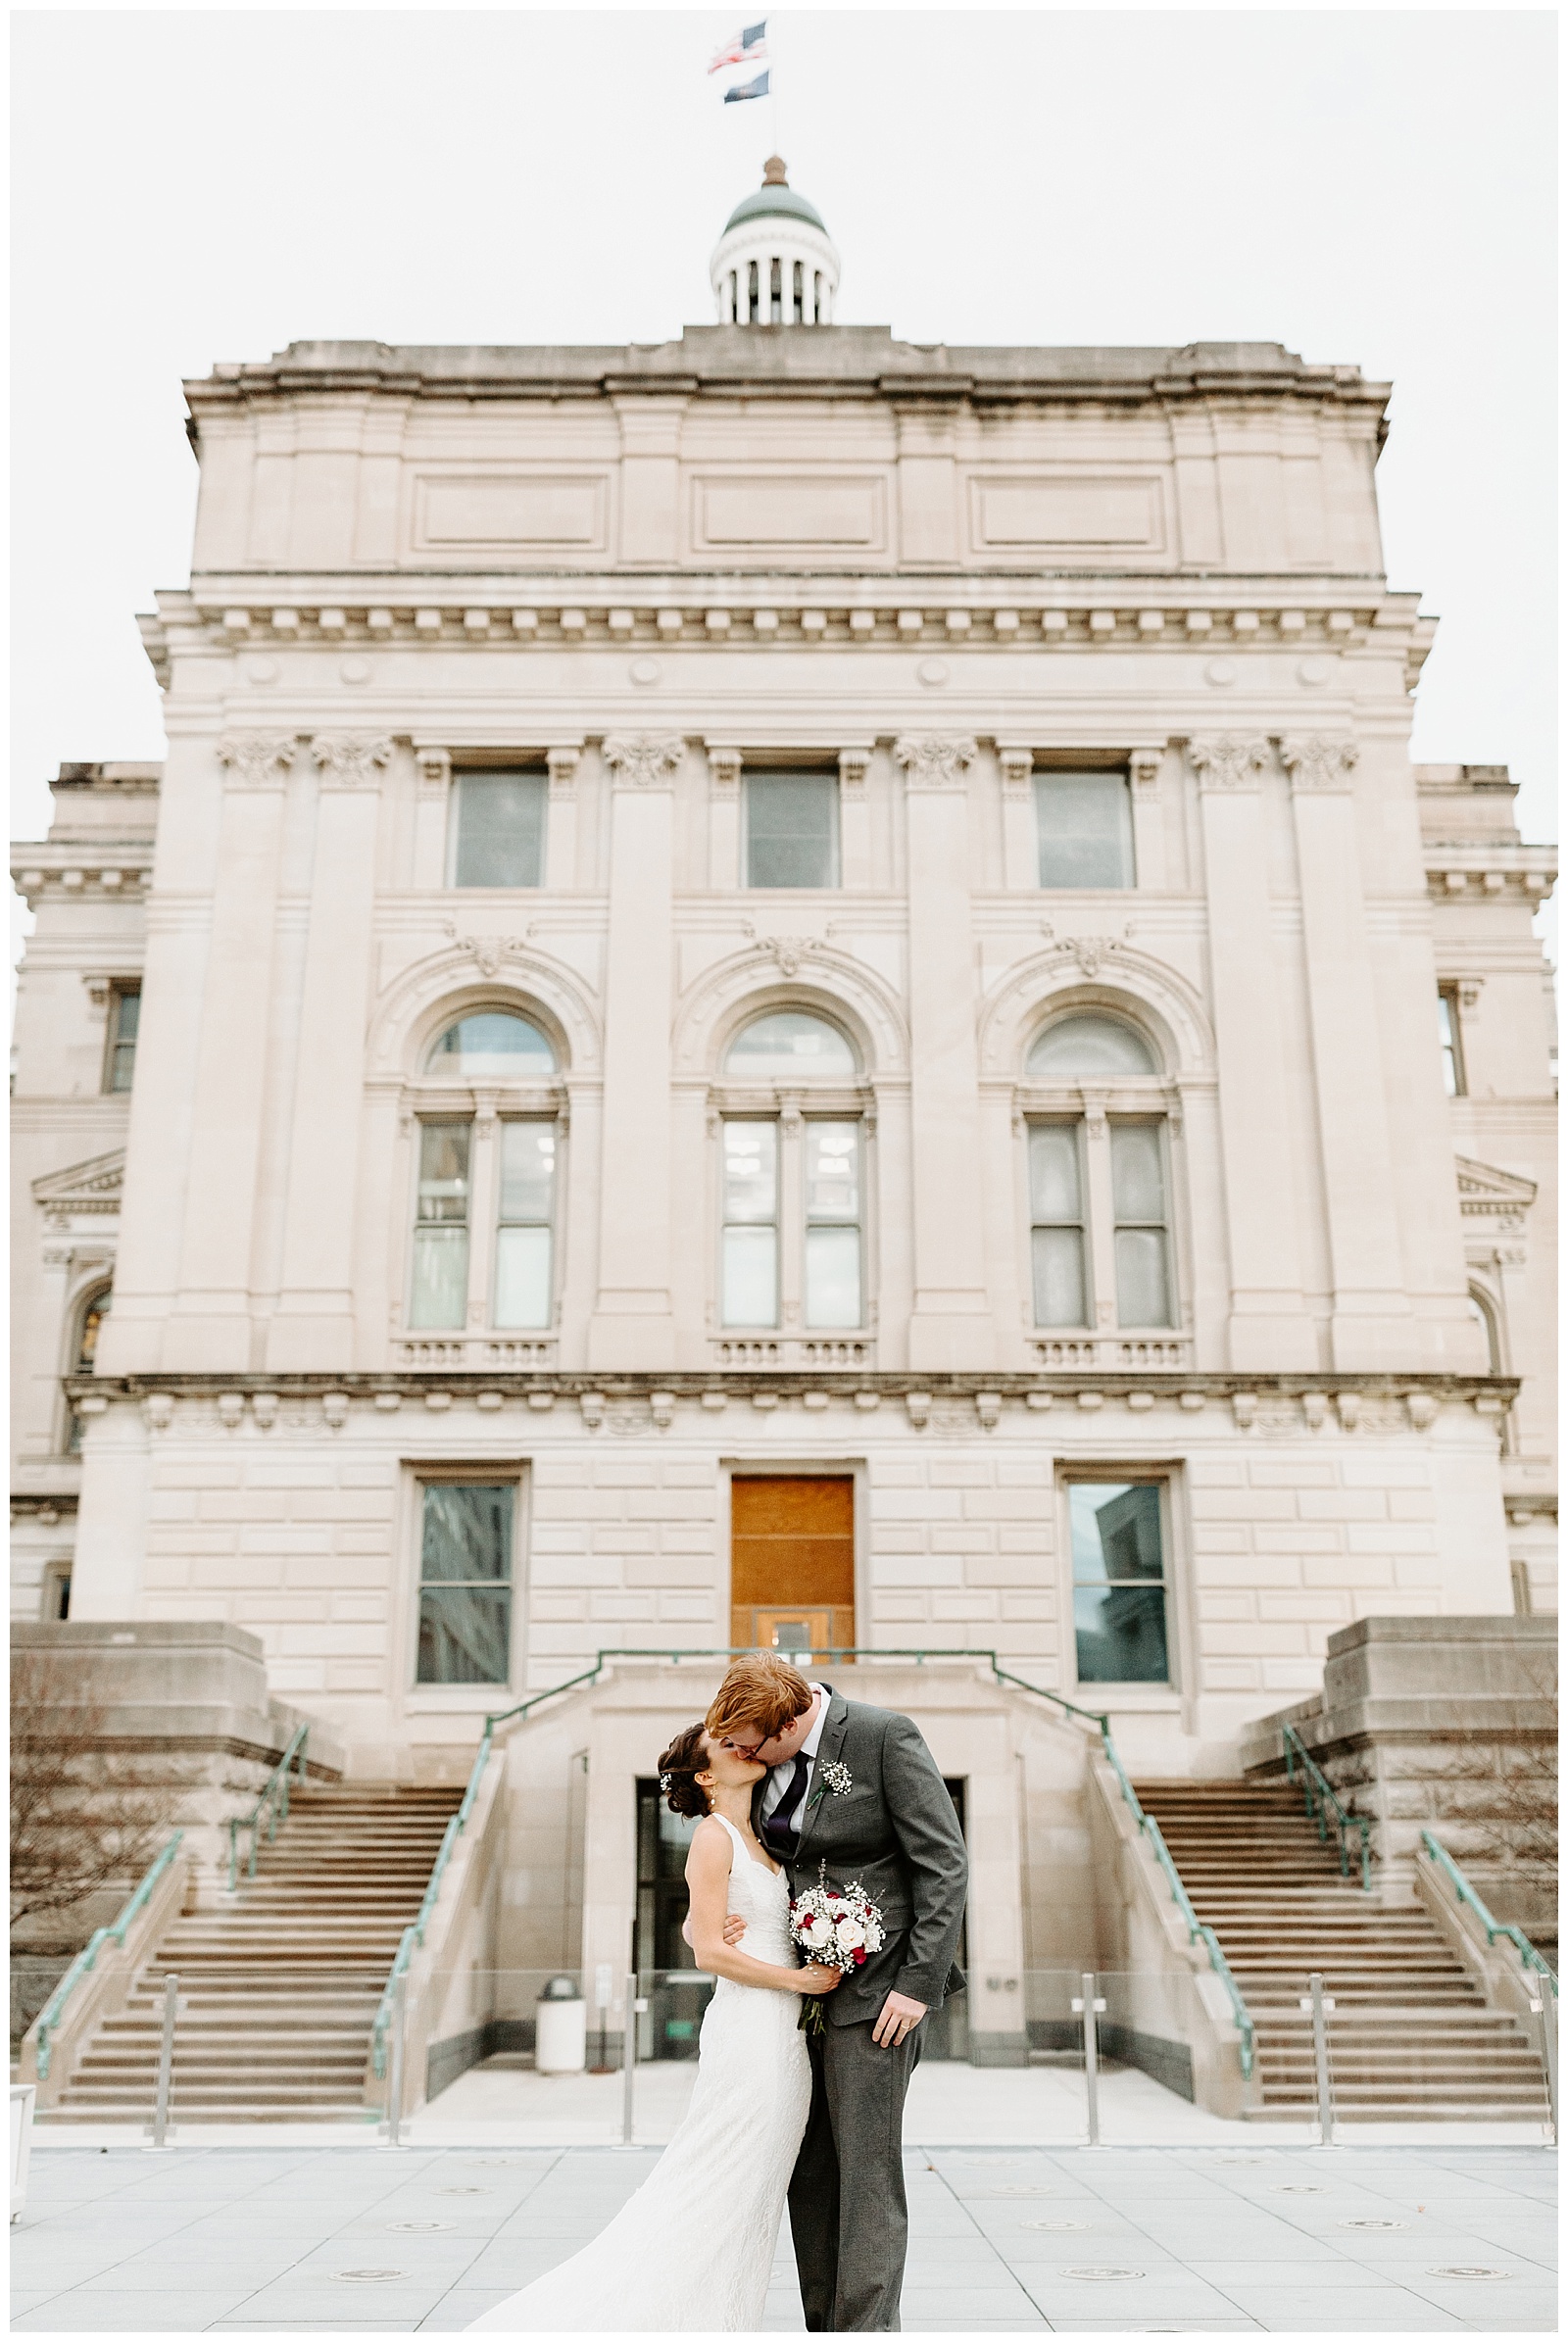 Indianapolis Statehouse Wedding, Indiana Wedding Photographer, Indiana Statehouse wedding photography, Indiana wedding photographer